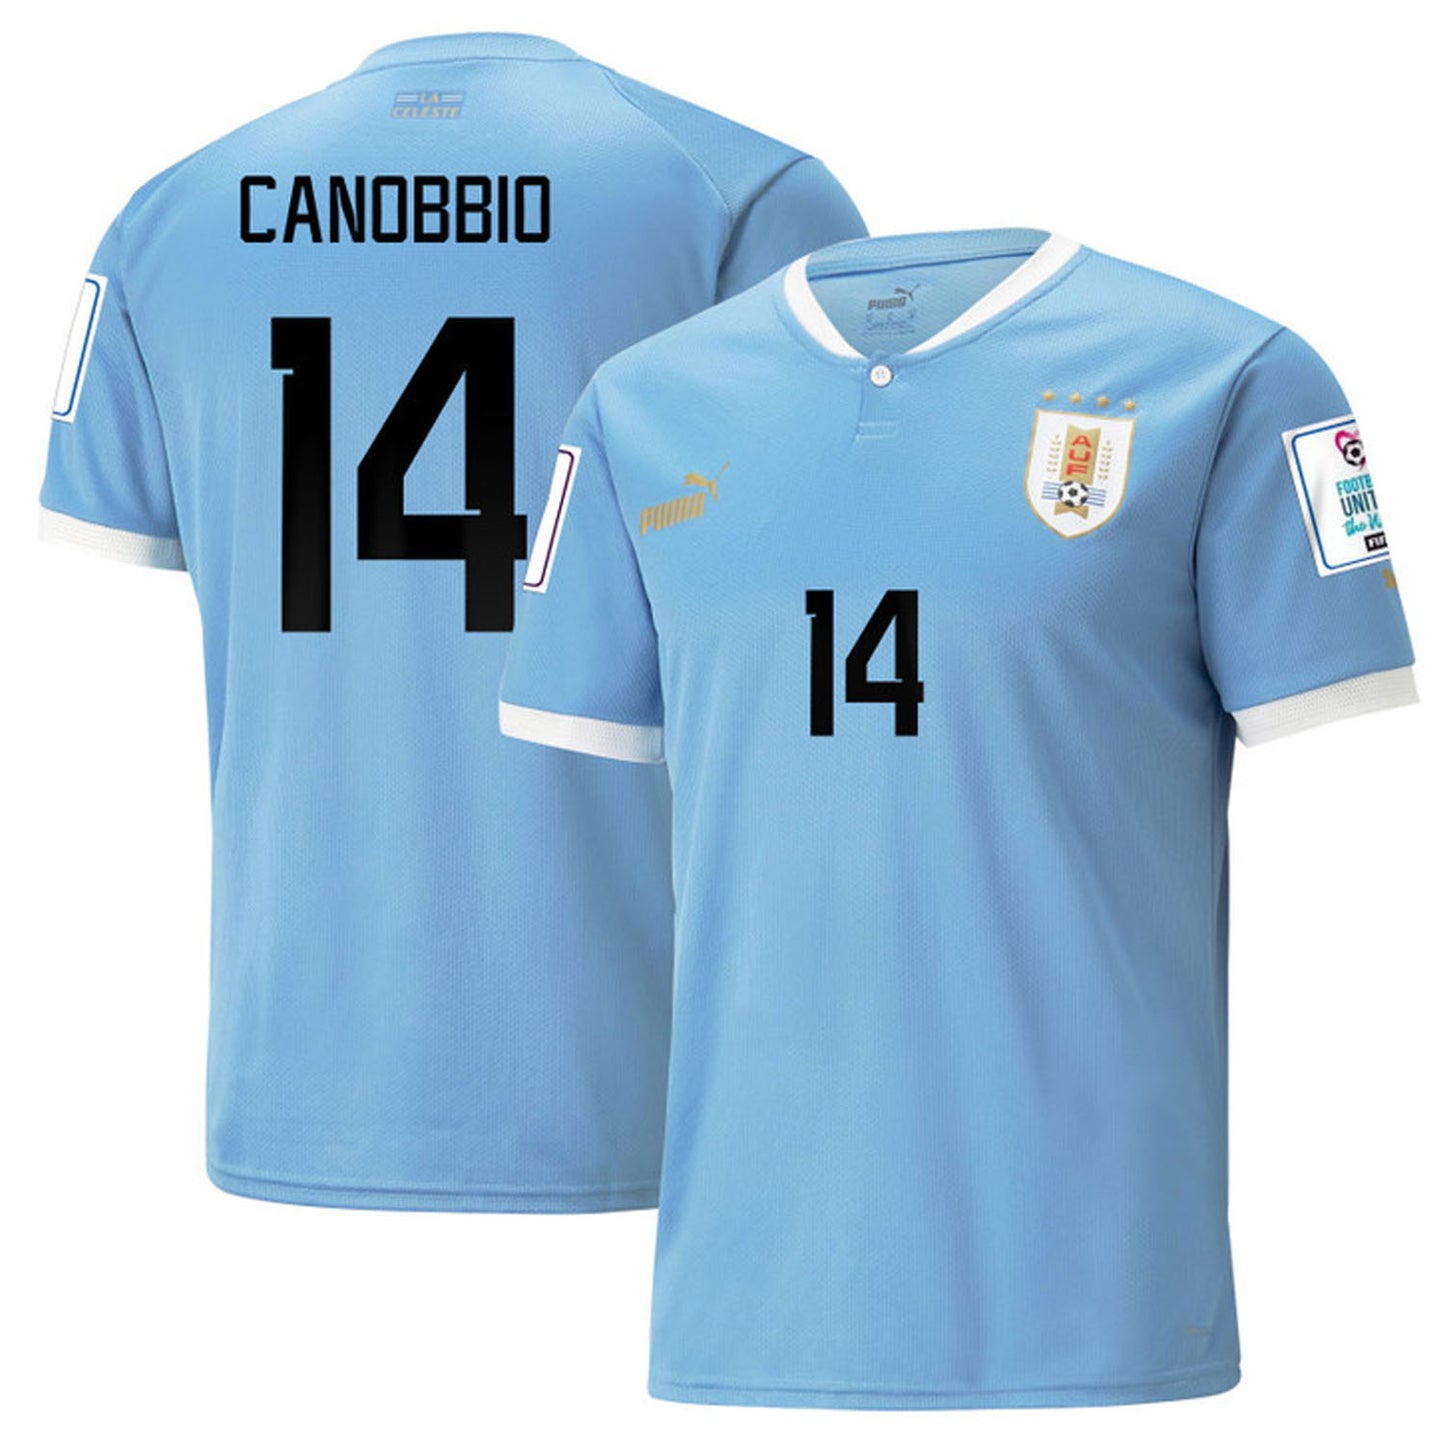 Agustín Canobbio Uruguay 14 Fifa World Cup Jersey